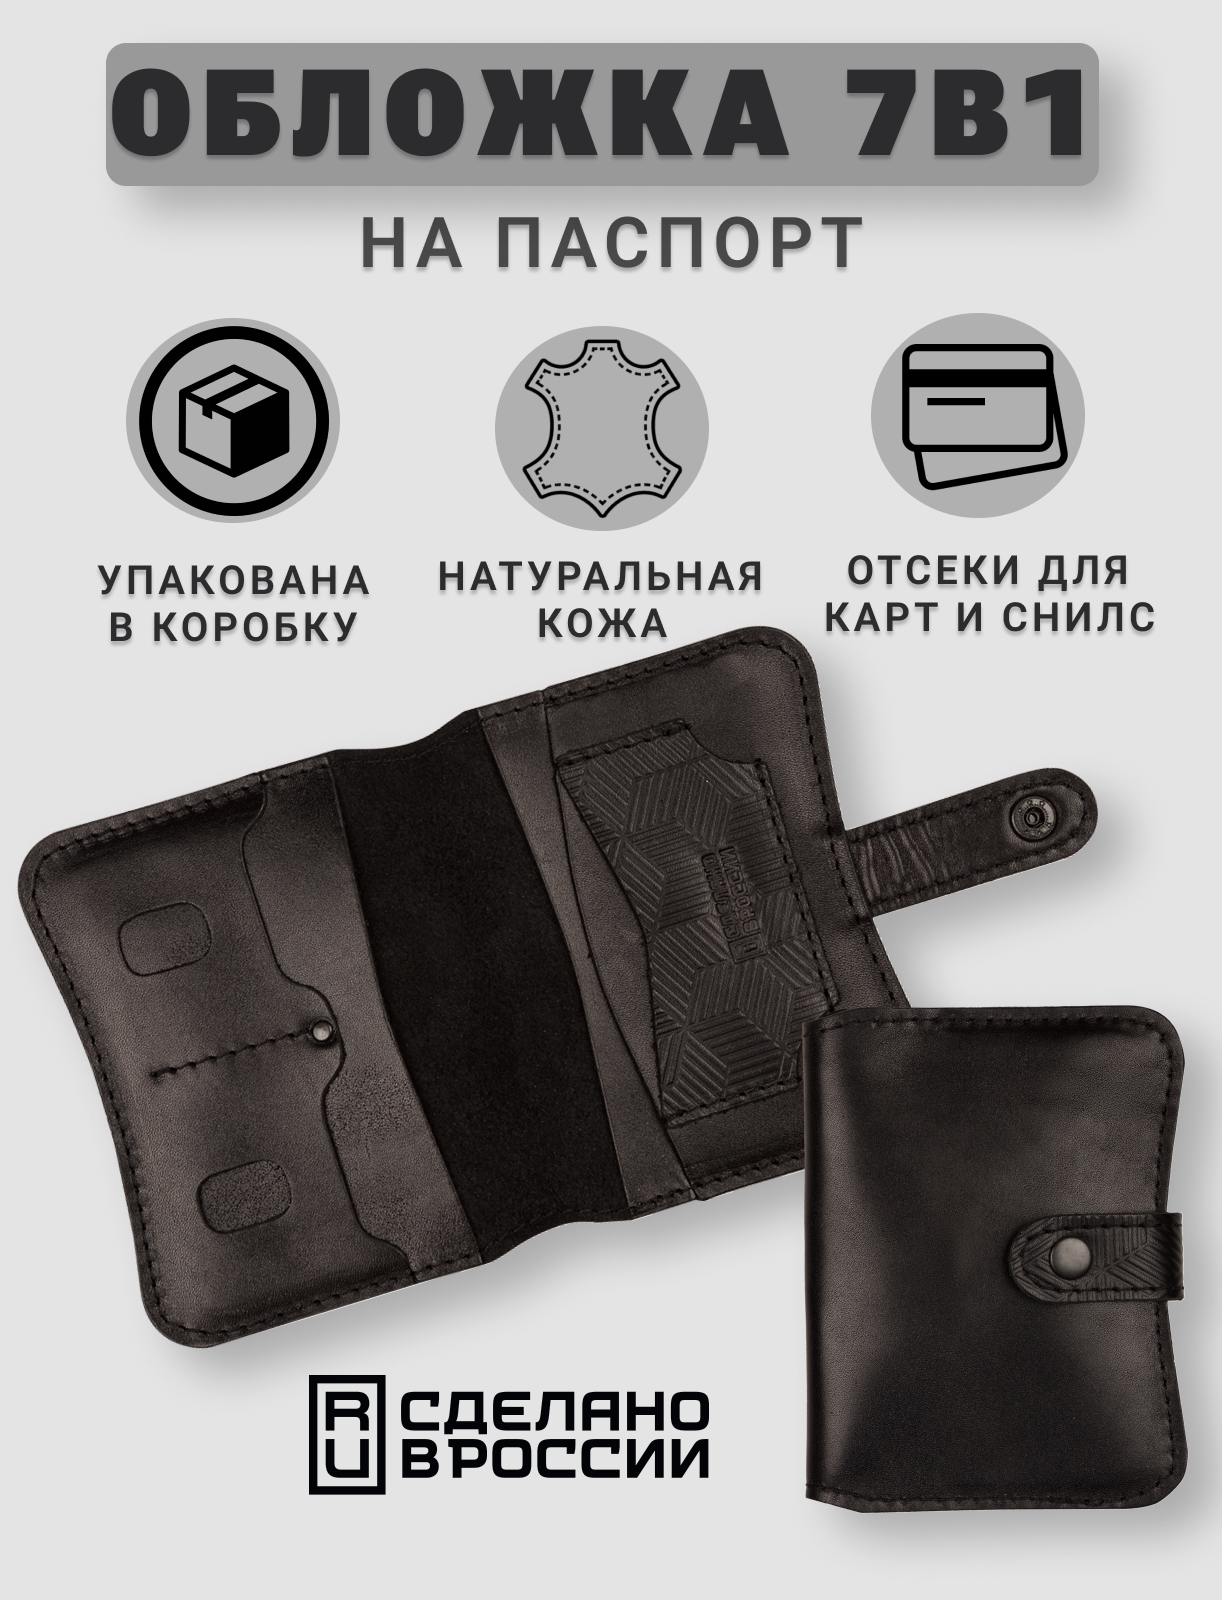 Обложка для паспорта кожZавод Кожаная обложка для паспорта и карт на кнопке